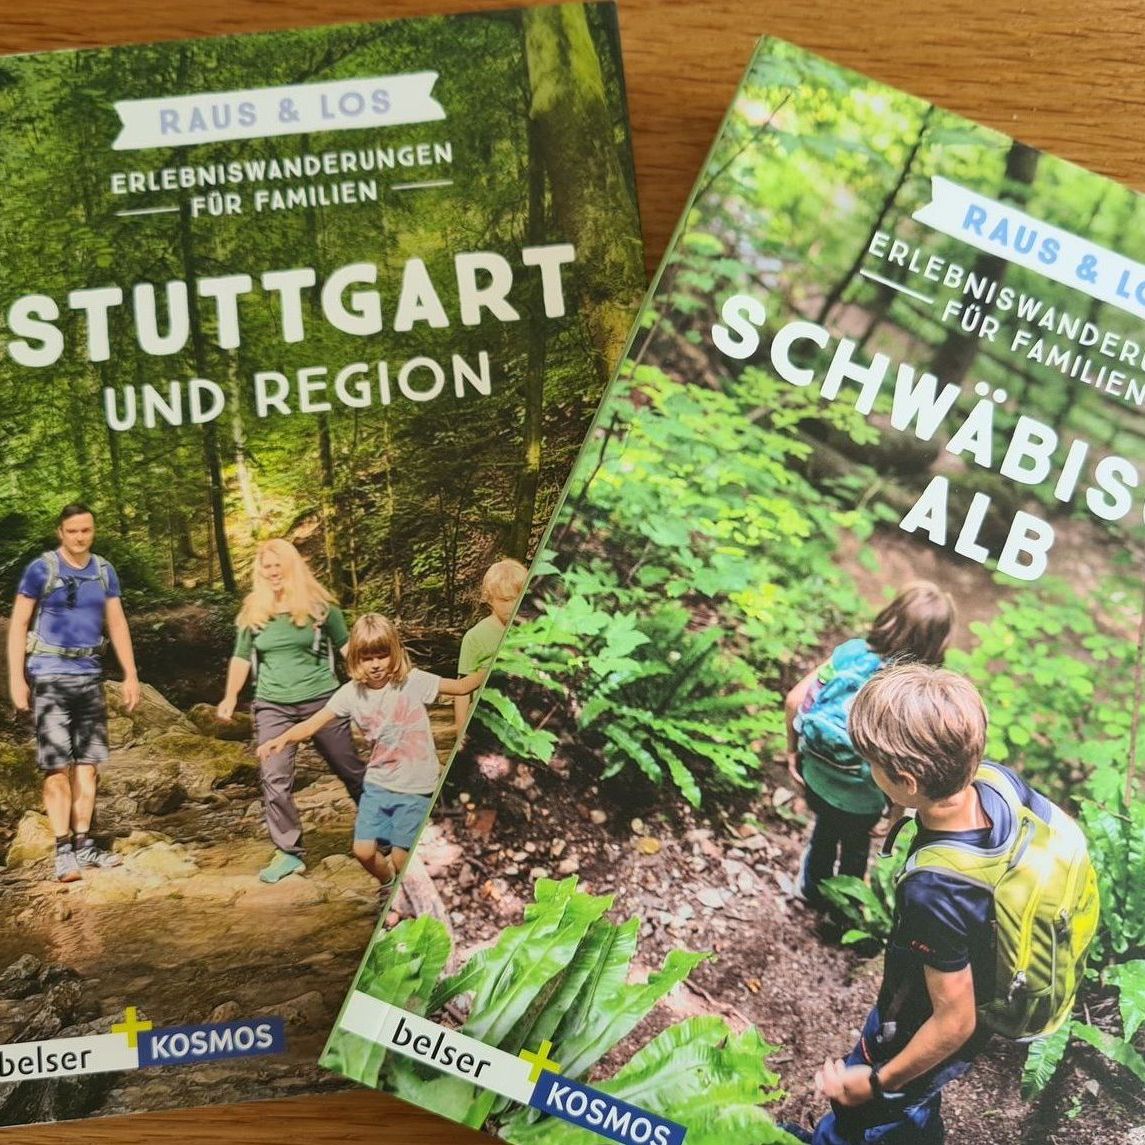 Wanderführer Wanderungen Familien Stuttgart